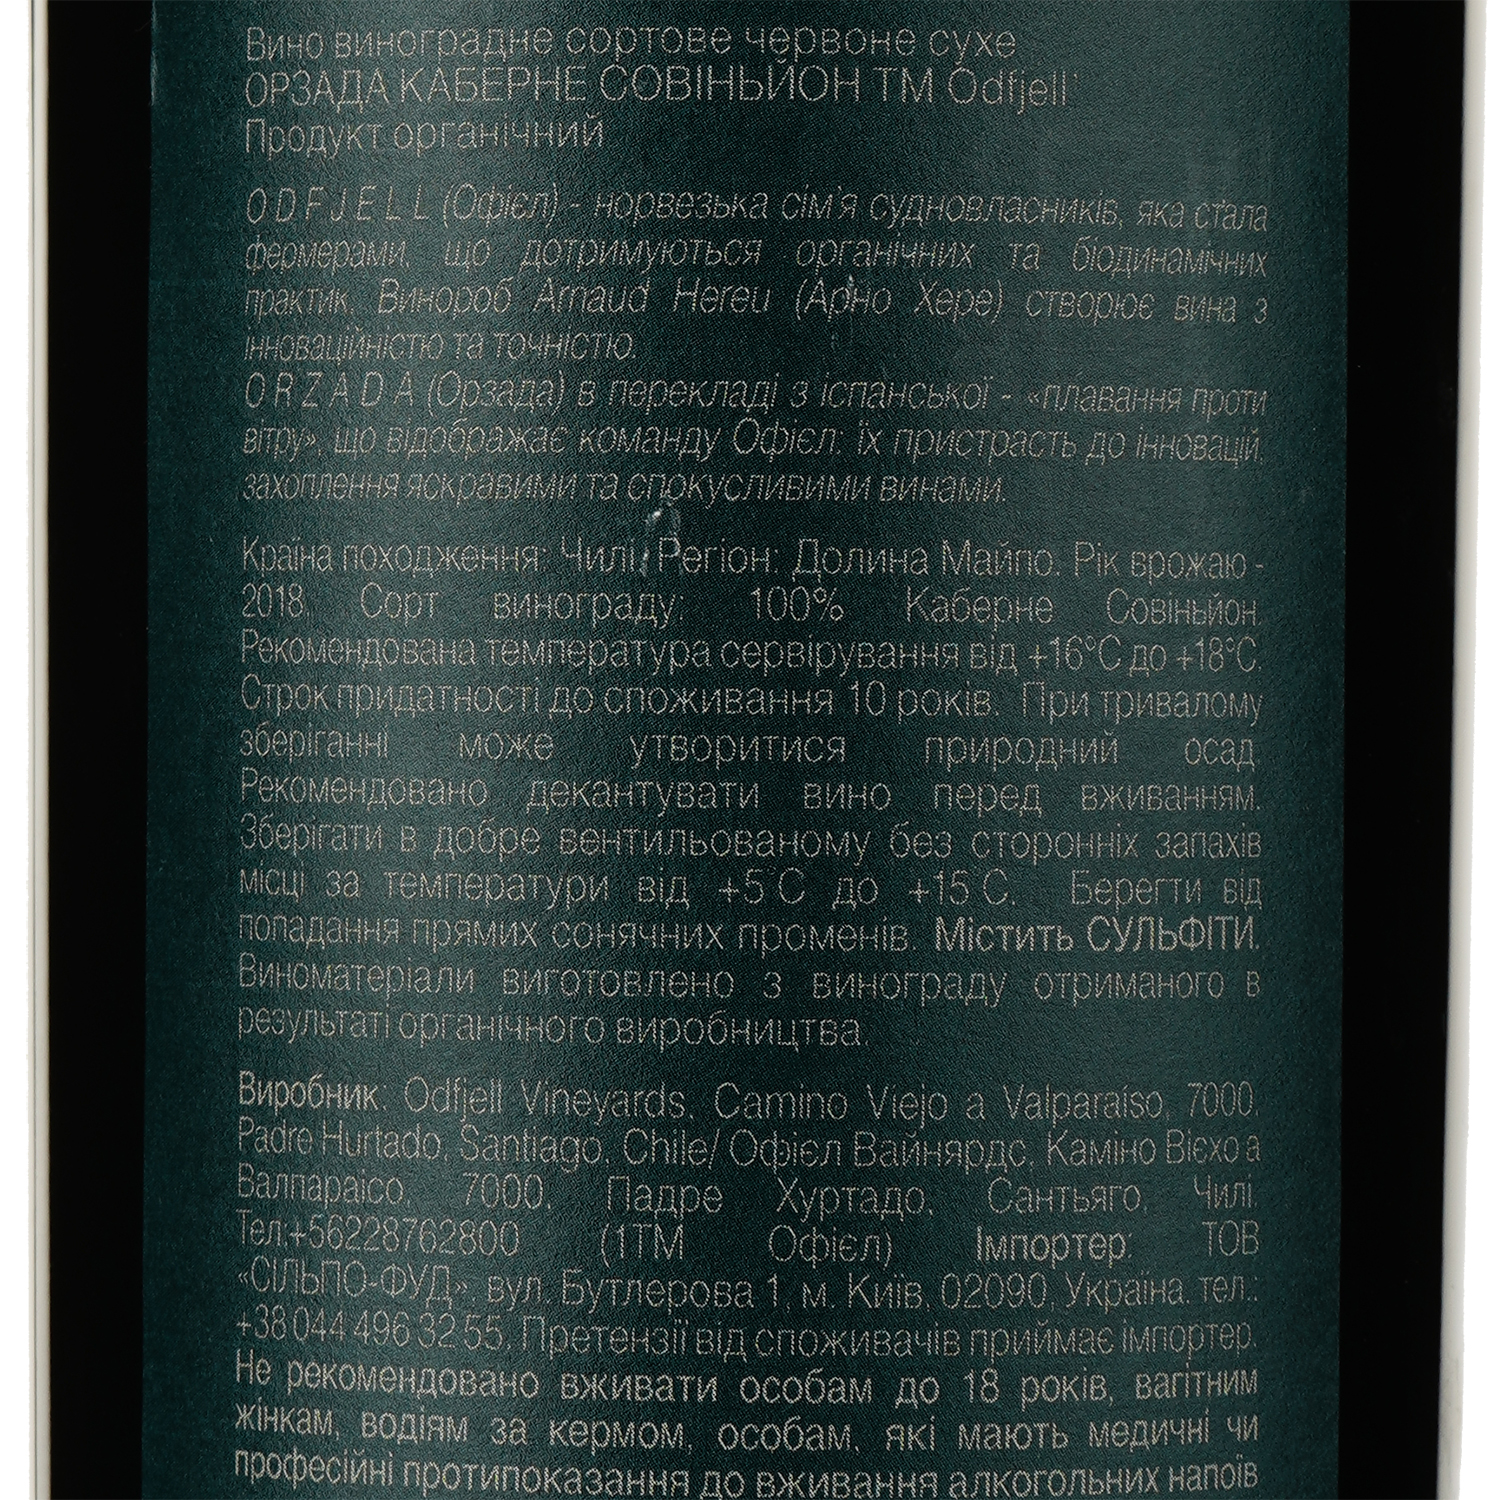 Вино Odfjell Orzada Premium Cabernet Sauvignon, червоне, сухе, 13%, 0,75 л (871901) - фото 3